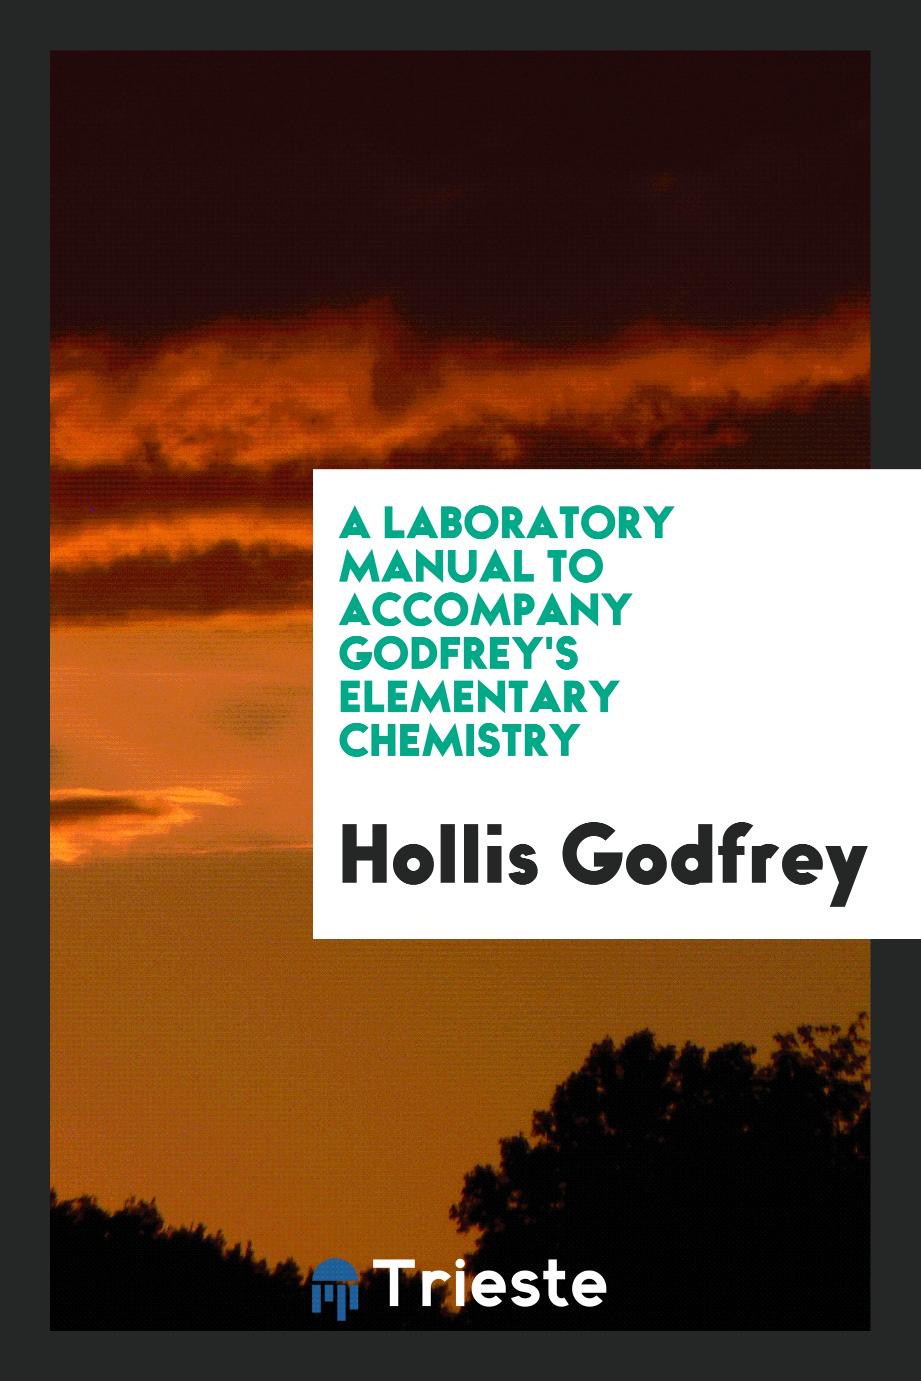 A Laboratory Manual to Accompany Godfrey's Elementary Chemistry